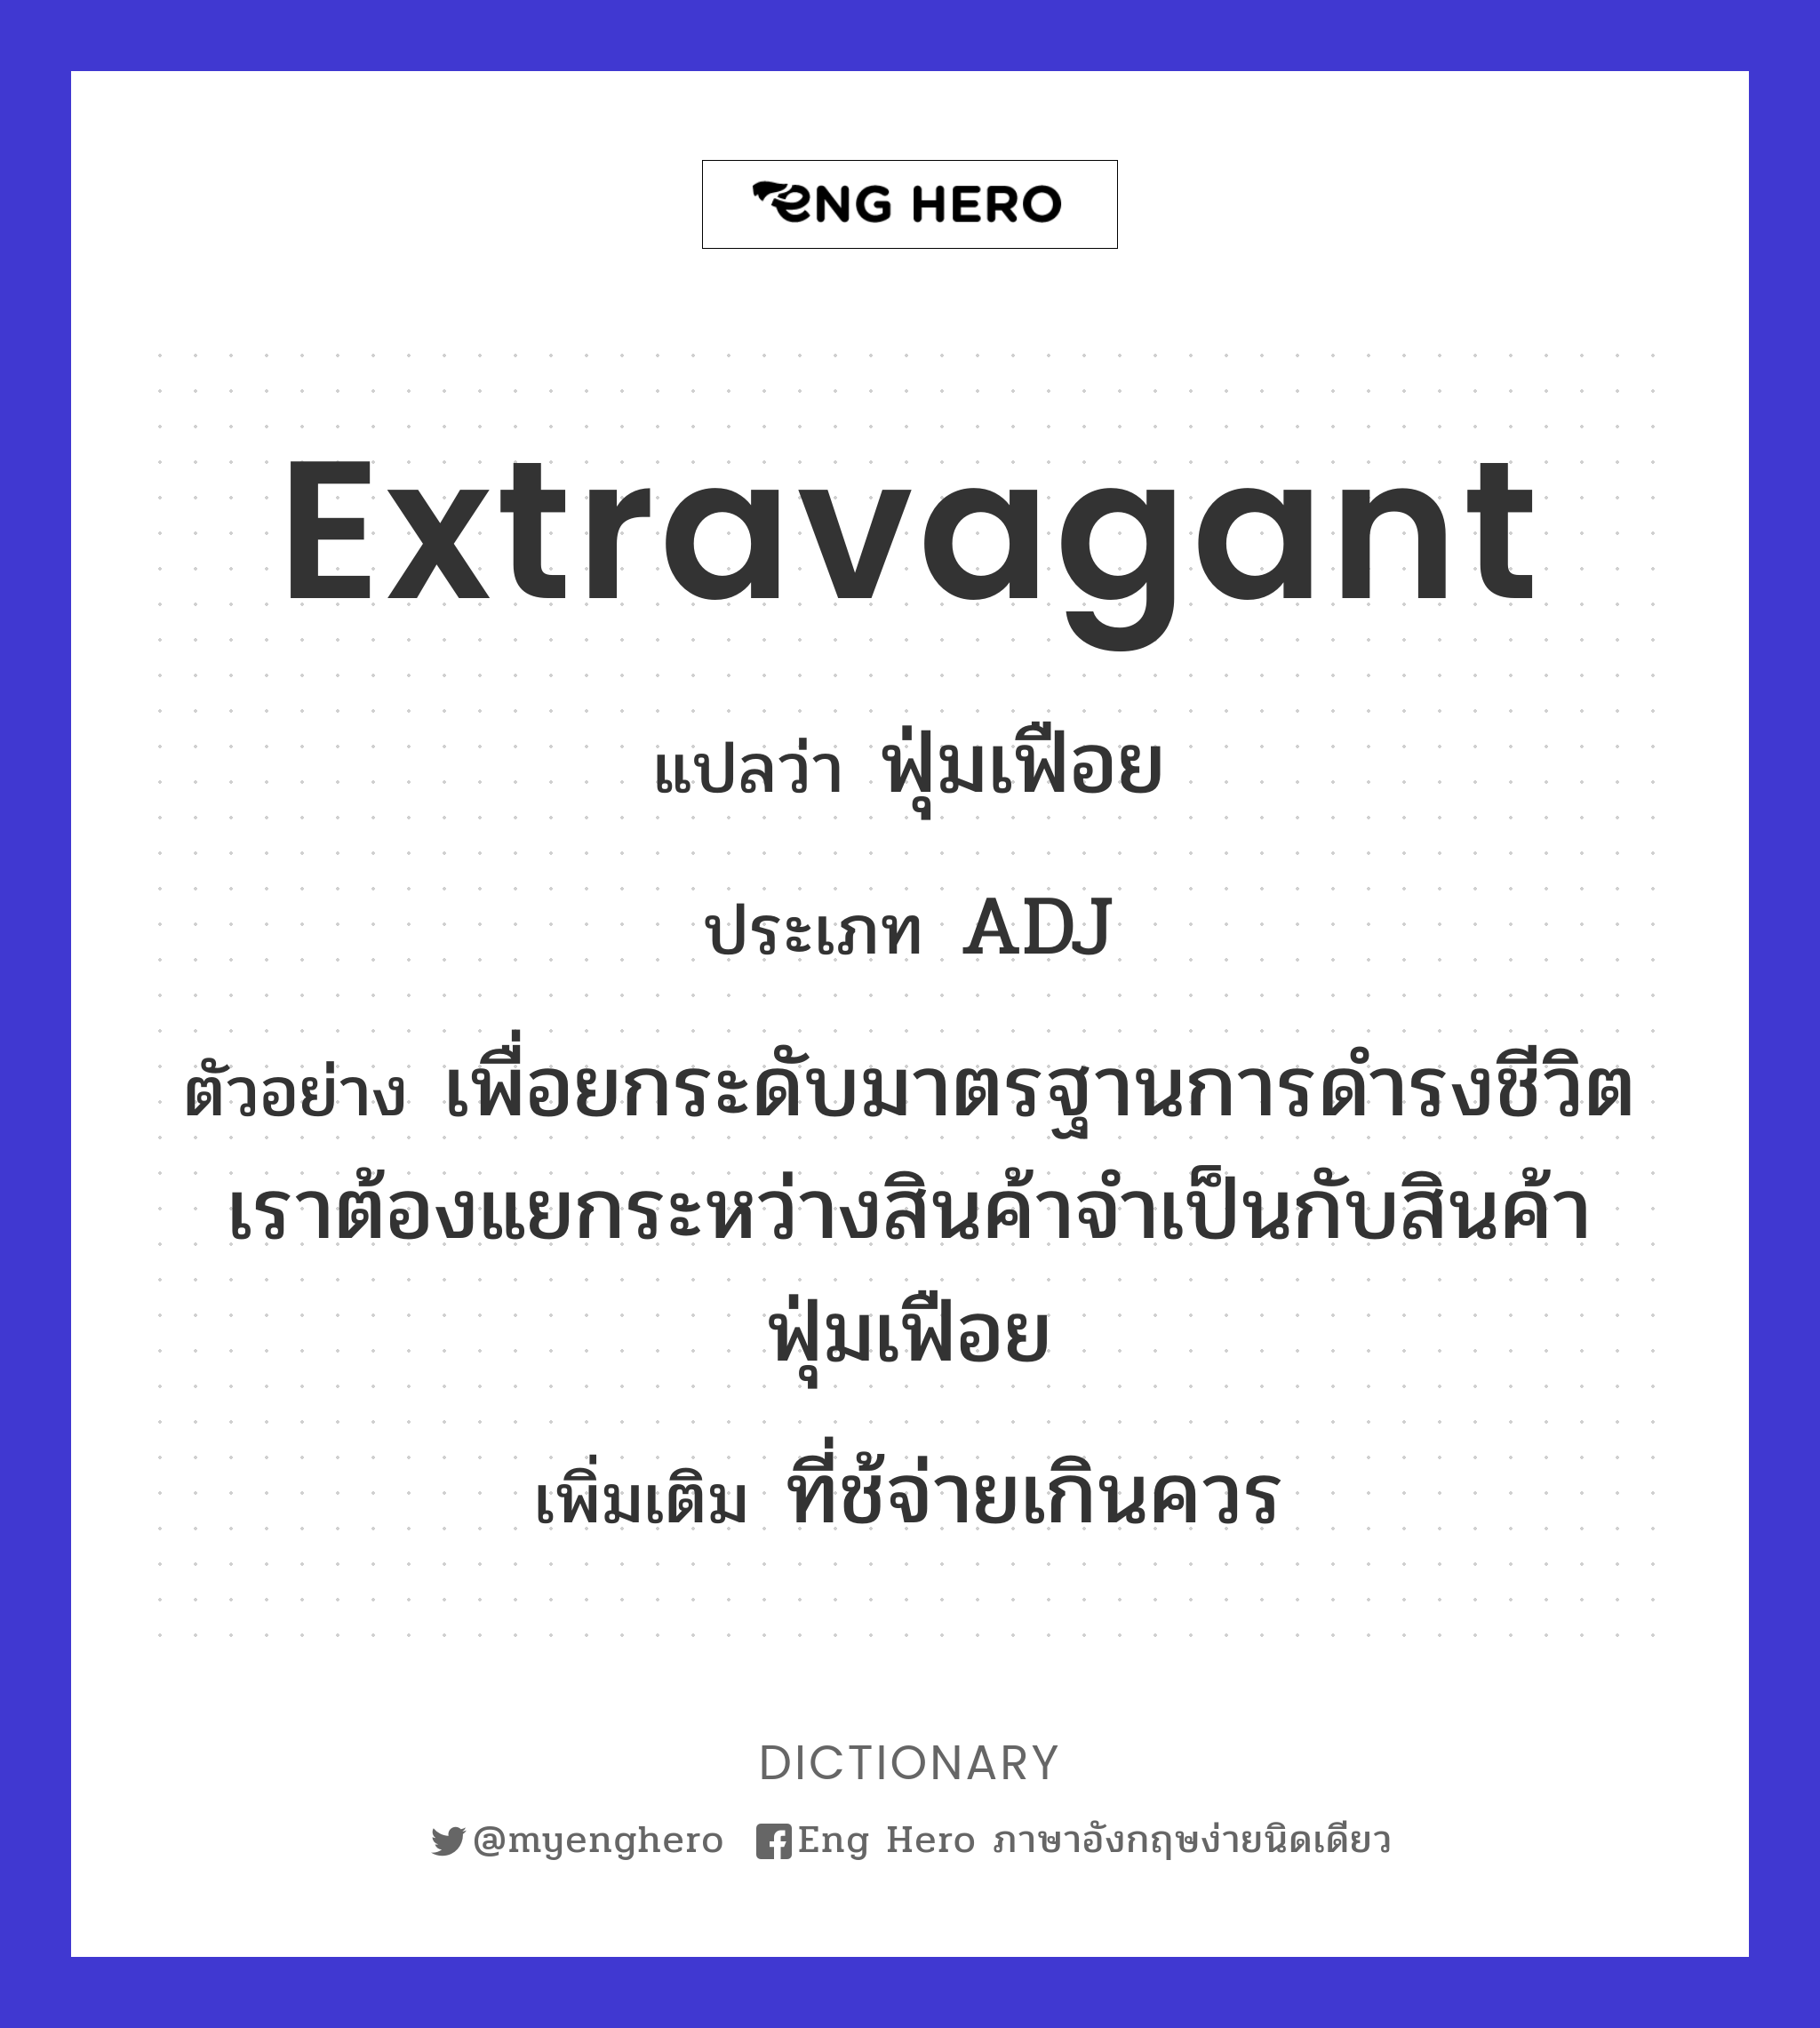 extravagant